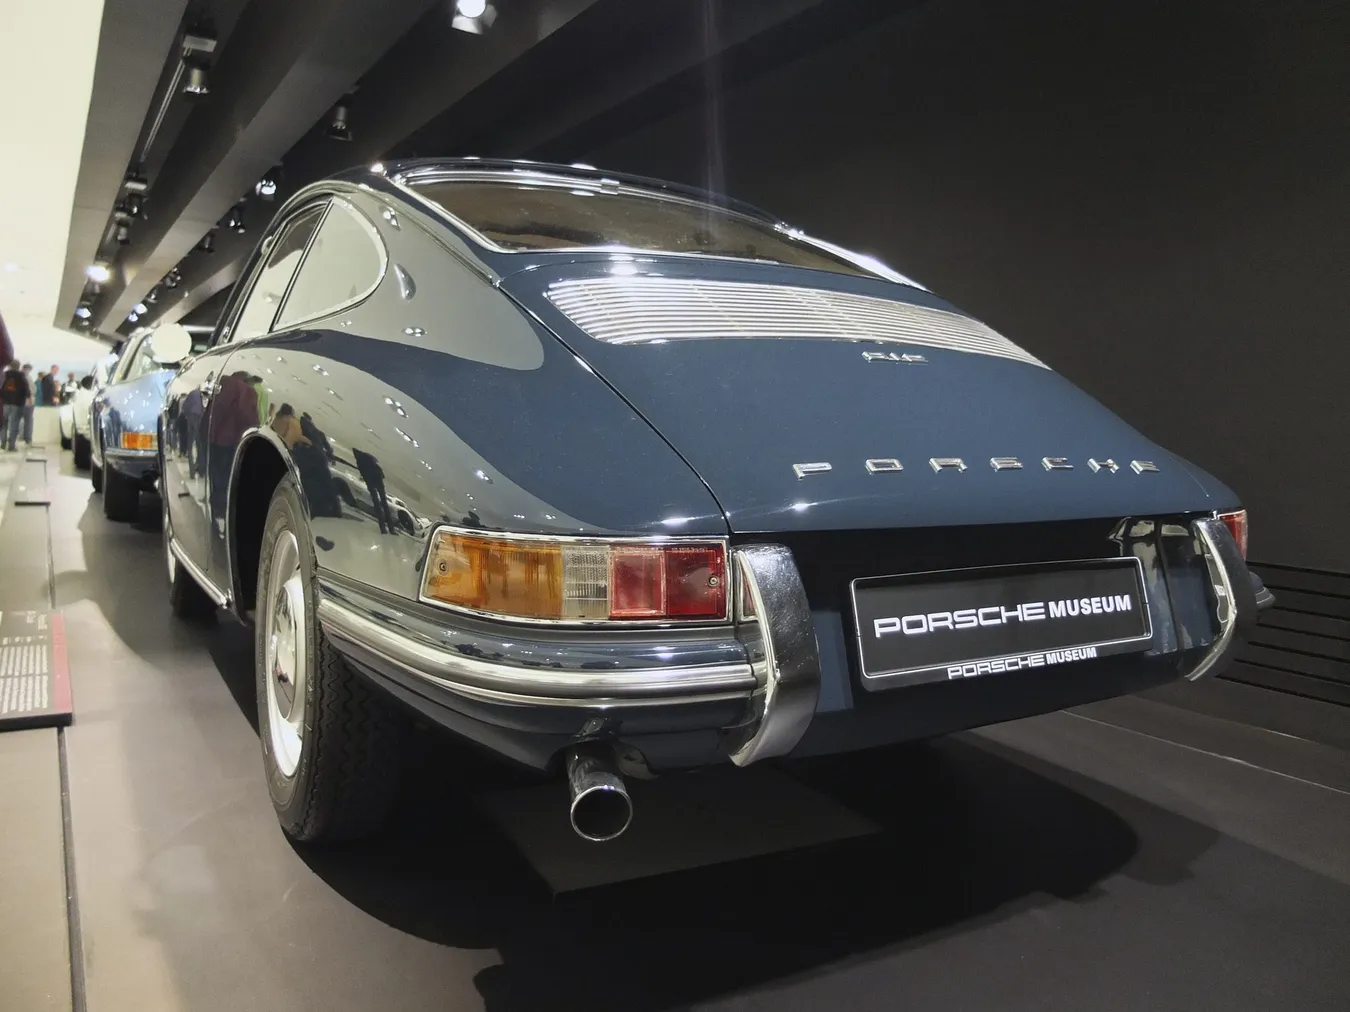 Porsche en el museo de la marca